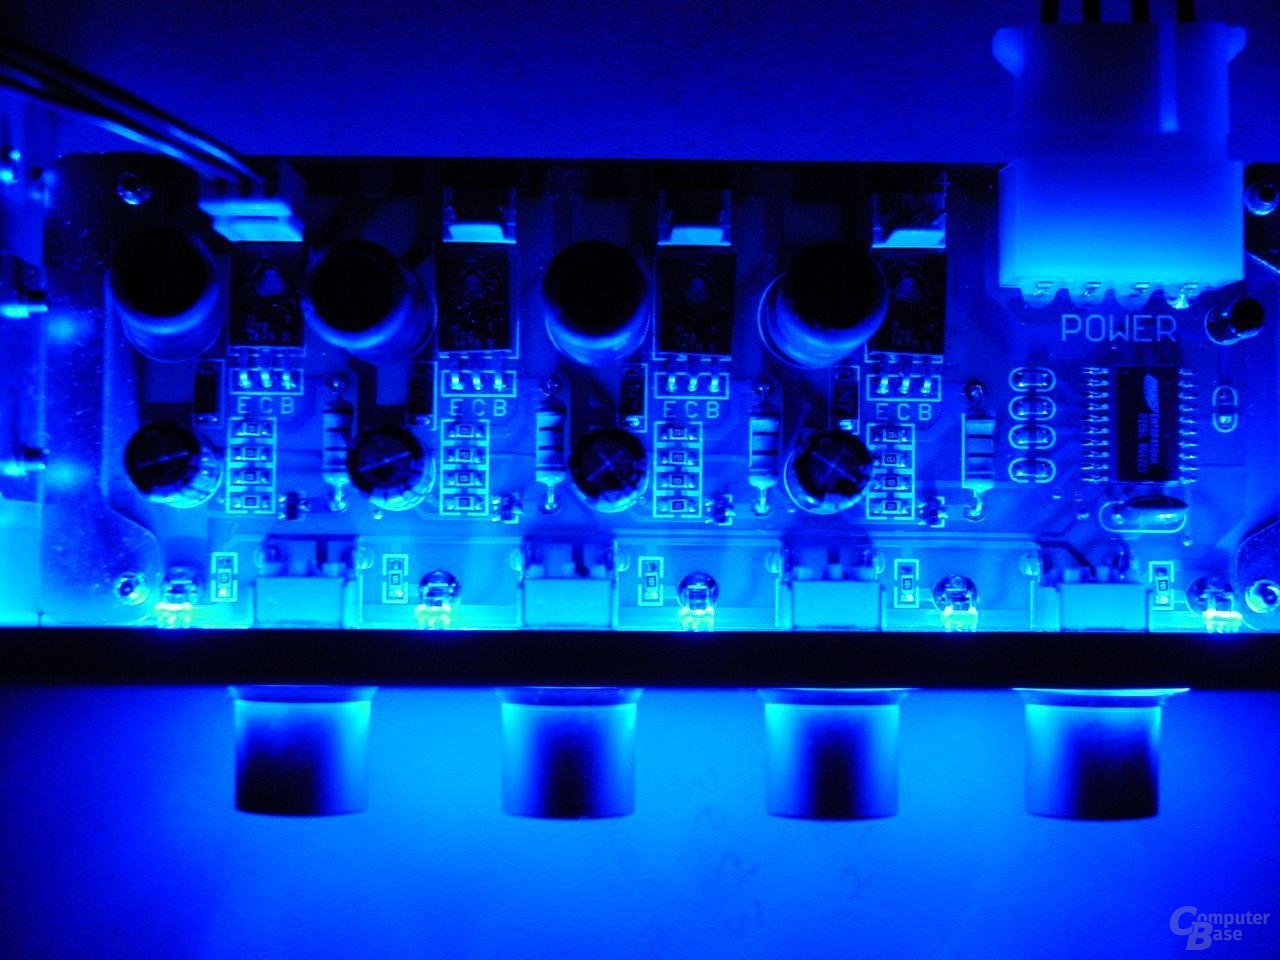 NXP-201 - Blaue LEDs